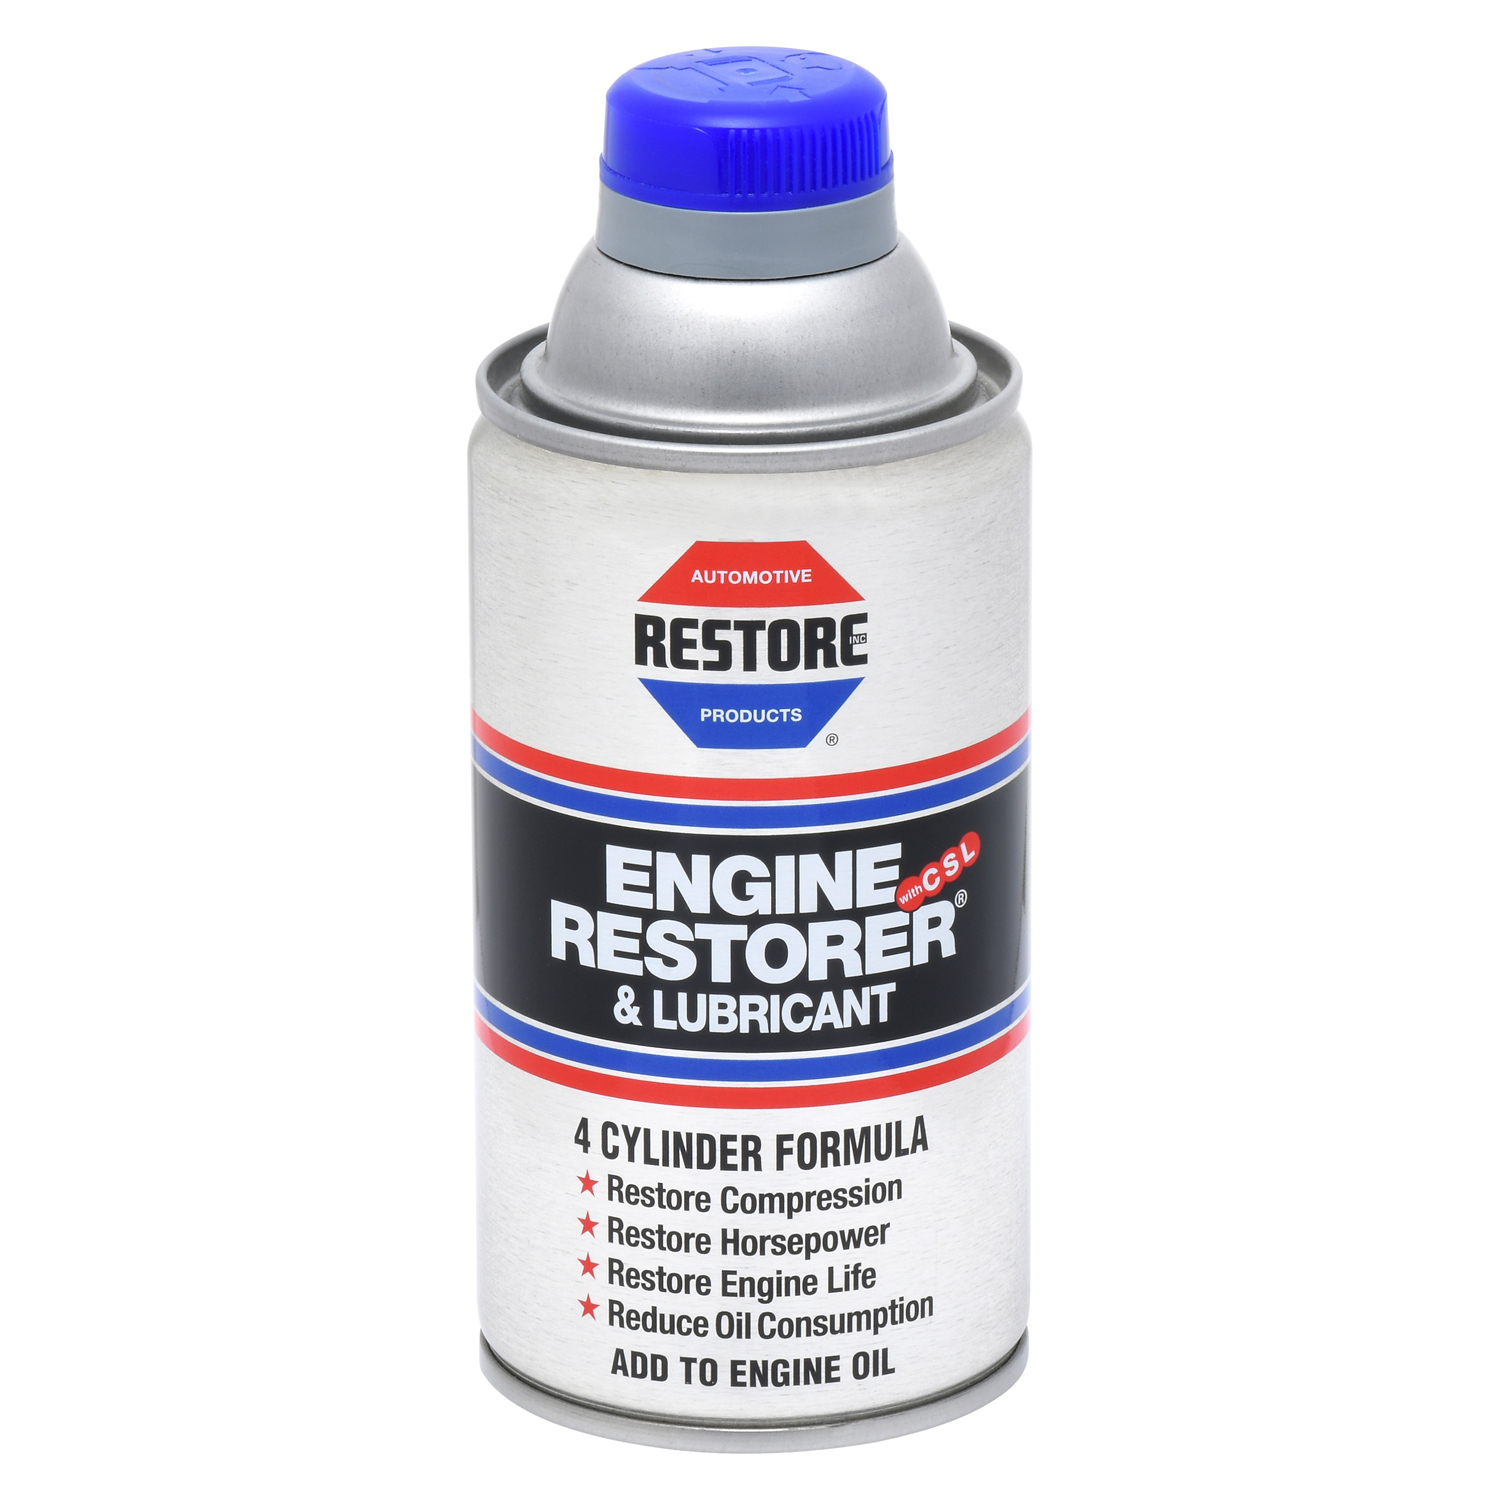 Restore 4-Cylinder Formula Engine Restorer and Lubricant - 9 oz. - image 5 of 5